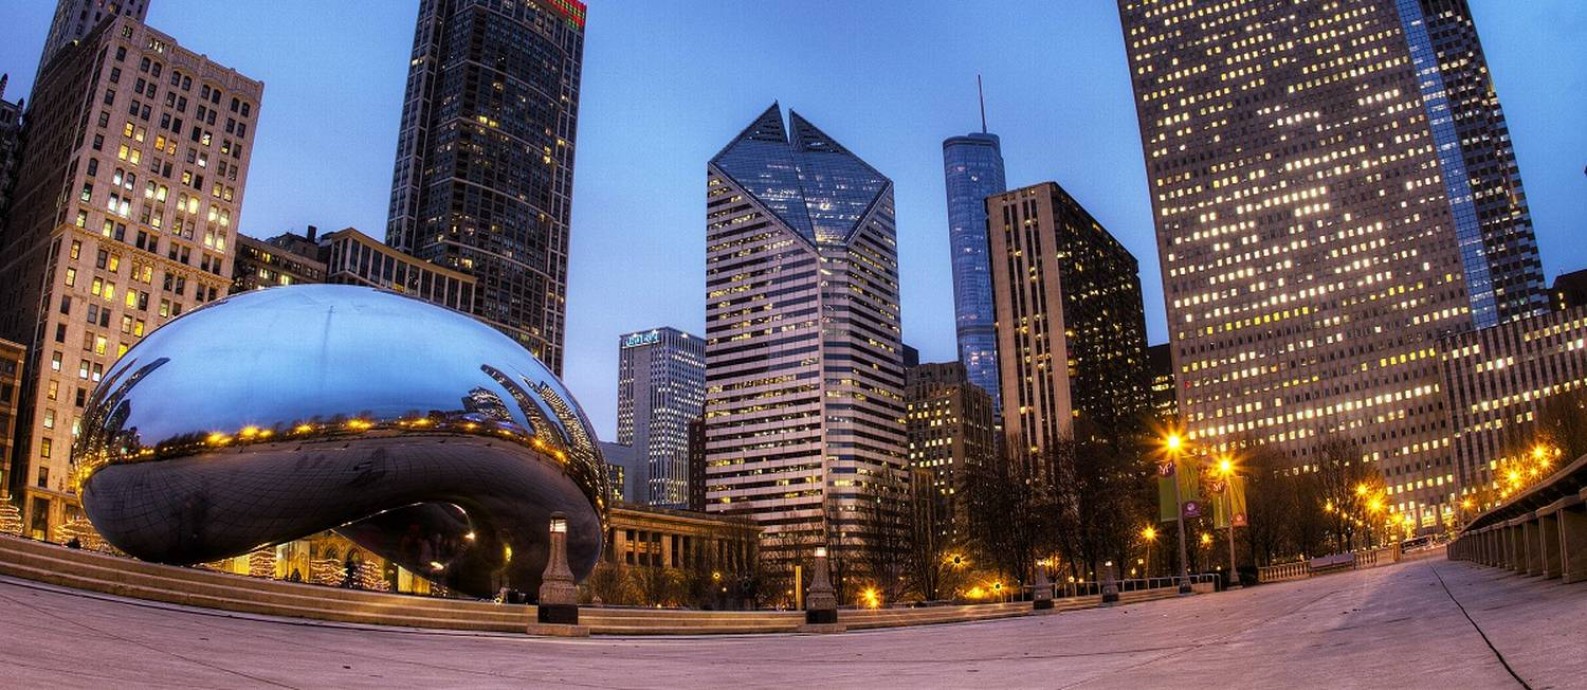 À frende dos arranha-céus do centro de Chicago está a Cloud Gate, uma escultura gigantesca que ficou conhecida como o 'feijão de Chicago' Foto: Adam Alexander / Divulgação